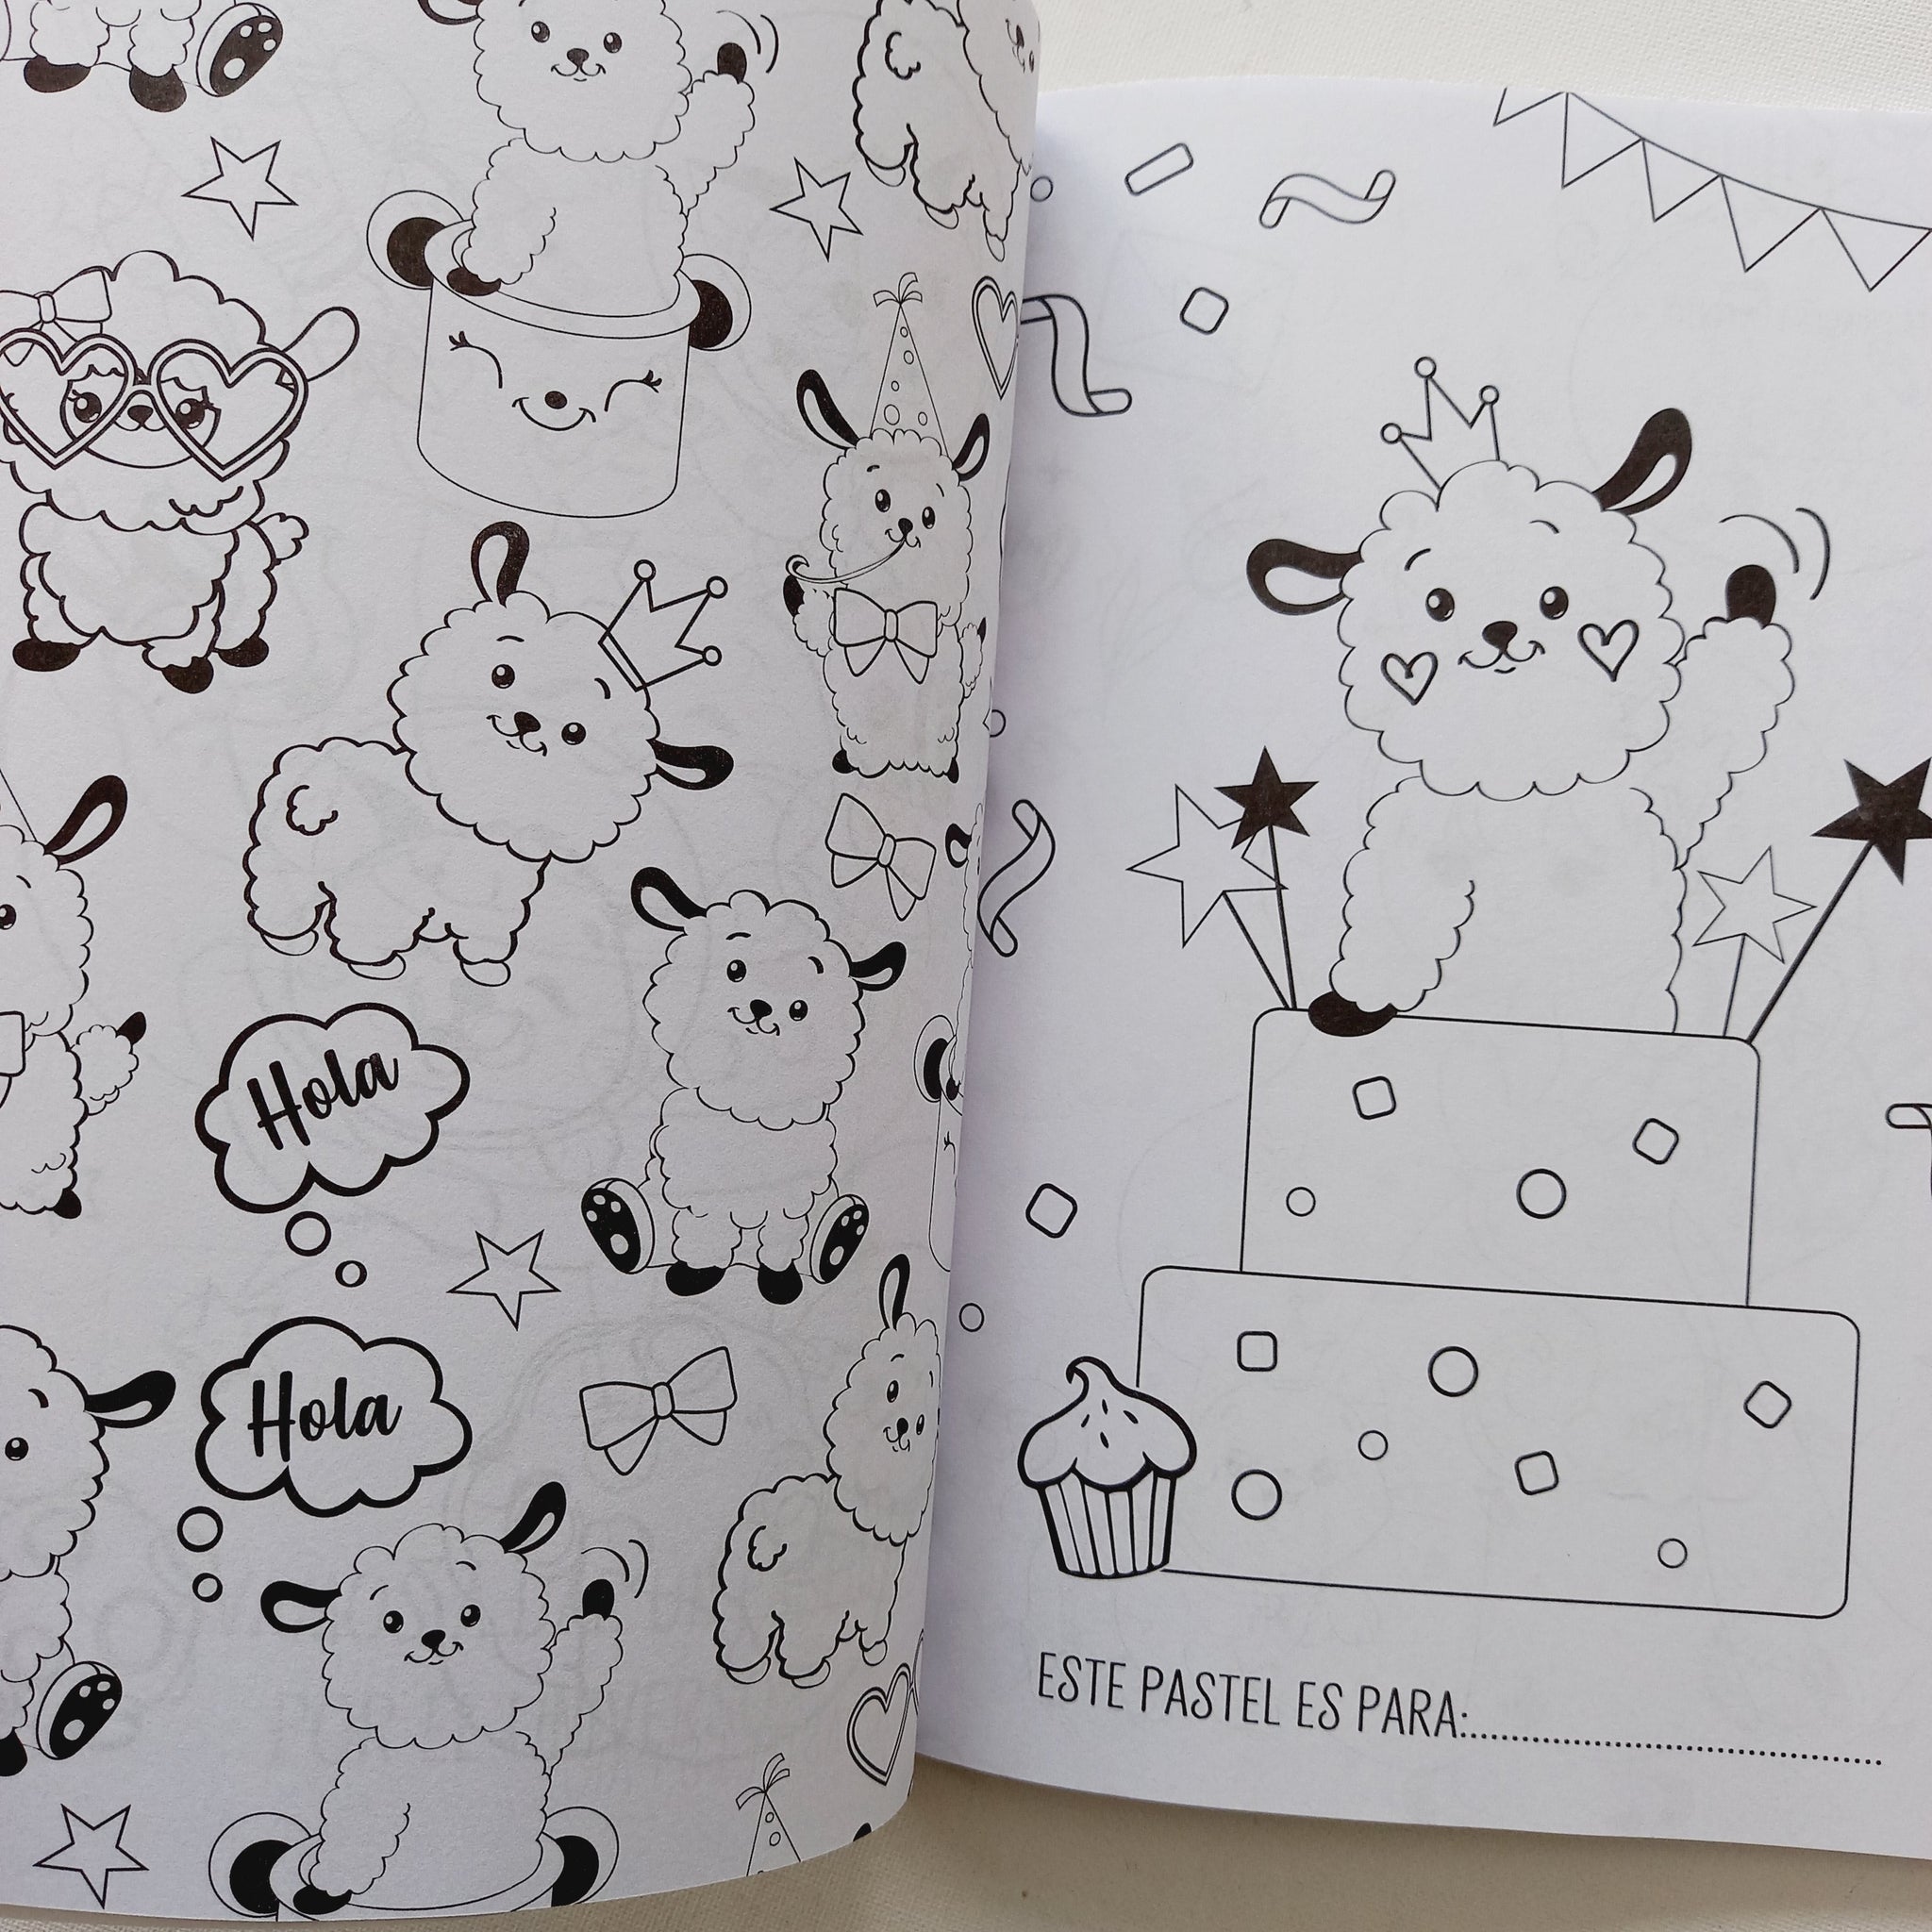 Libro Libro Para Colorear de Animales Para Niños de 9 a 12 Años